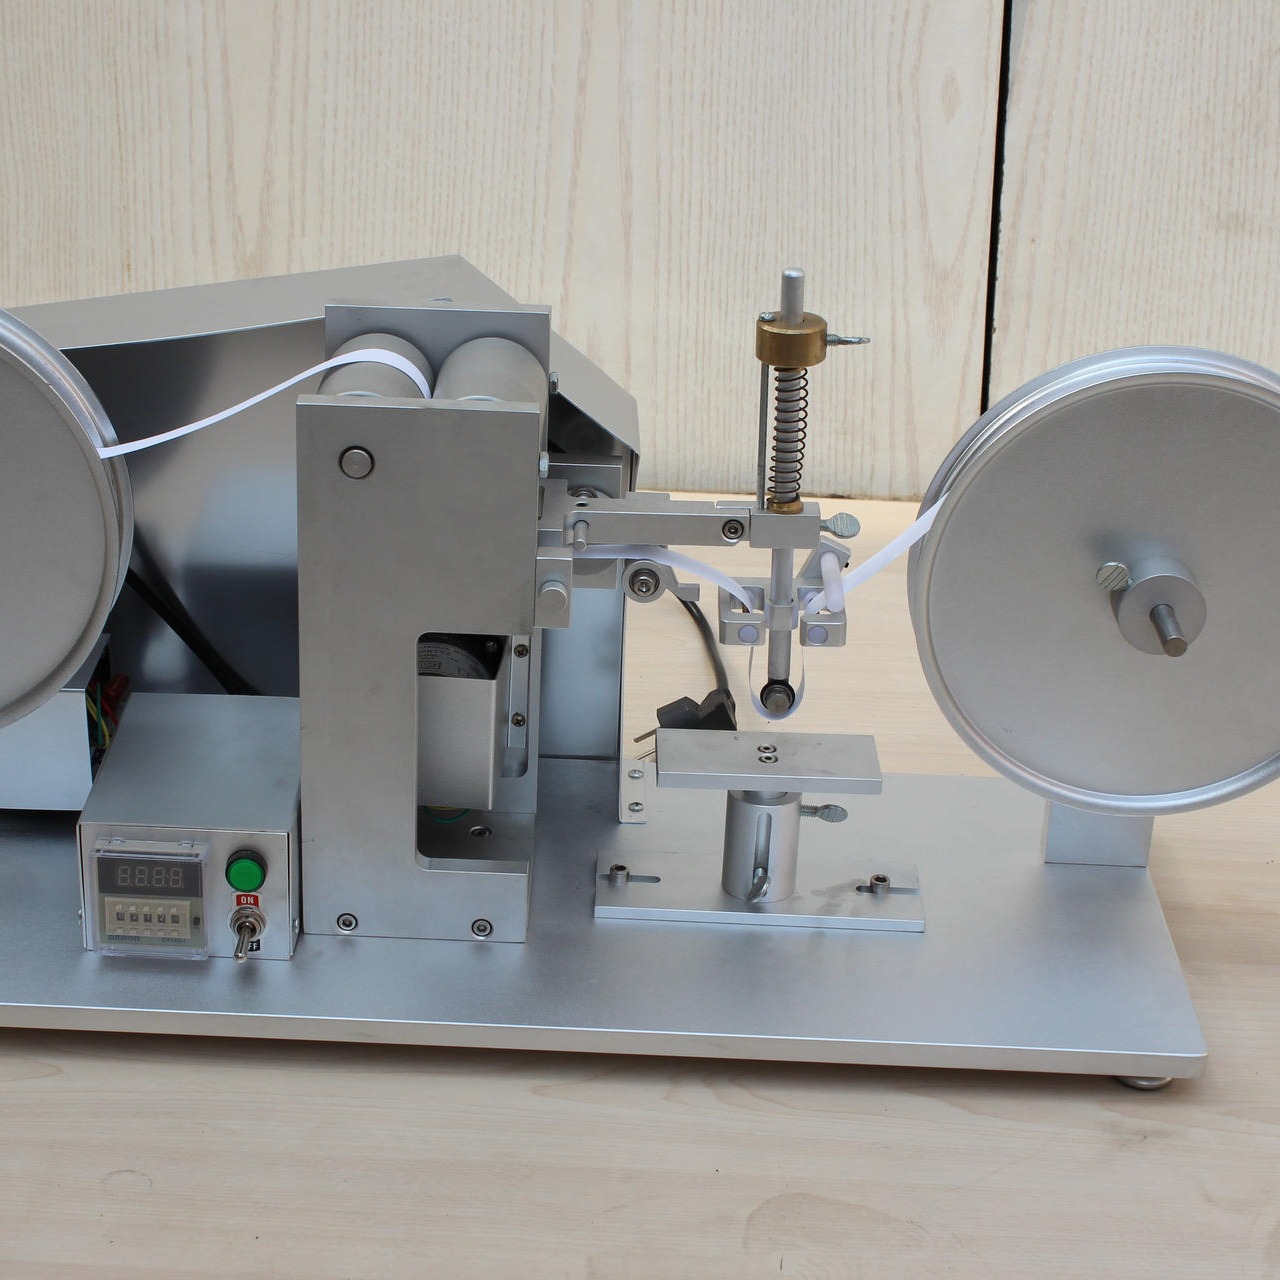 海莱斯HLS-9006 RCA纸带耐磨试验机 用于各种表面涂装(电镀、烤漆、丝印等试品之耐磨擦试验